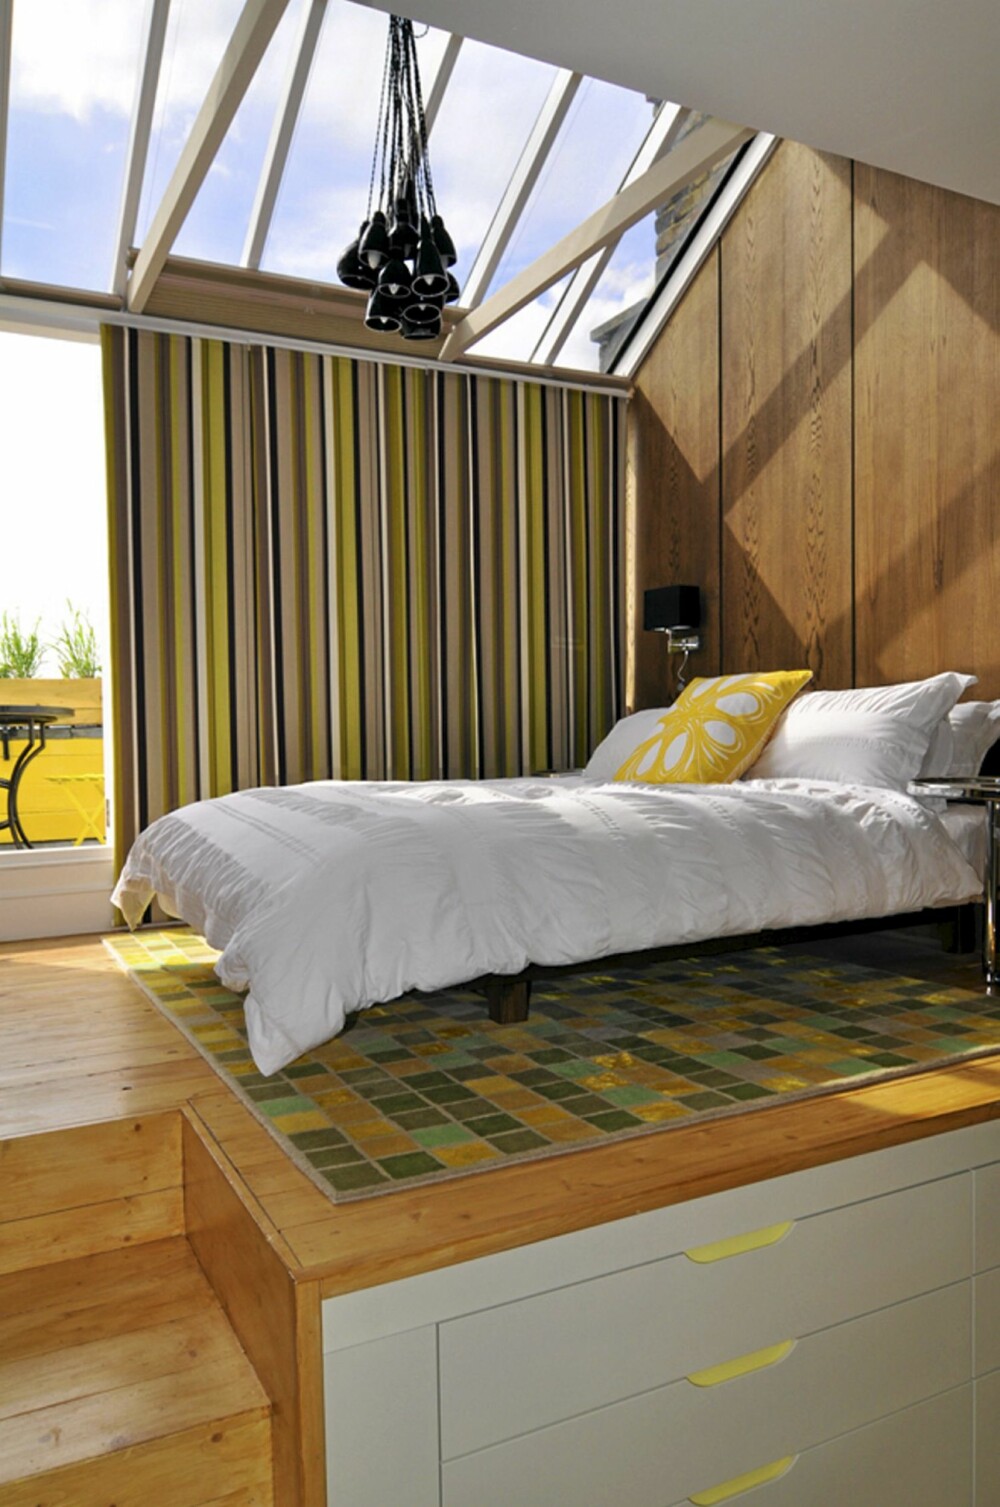 MYE LYS: Soverommet er lyst og åpent med store vinduer i taket som slipper inn godt med sol. De friske gule og grønntonene gir rommet et sommerlig og frodig uttrykk.